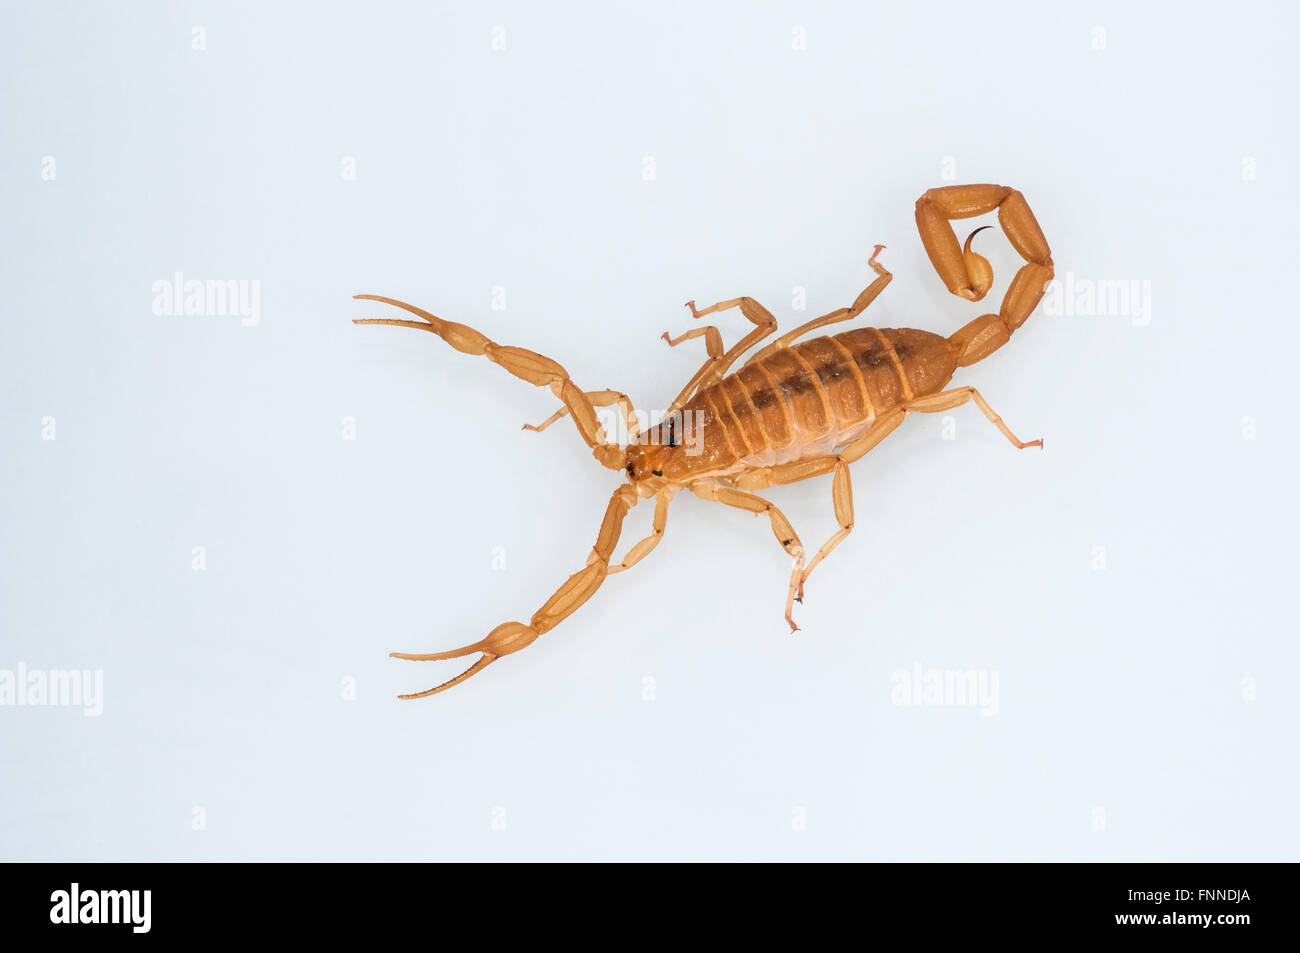 Arizona bark scorpion, Centruroides sculpturatus, native from Arizona to Mexico; cutout on white background Stock Photo